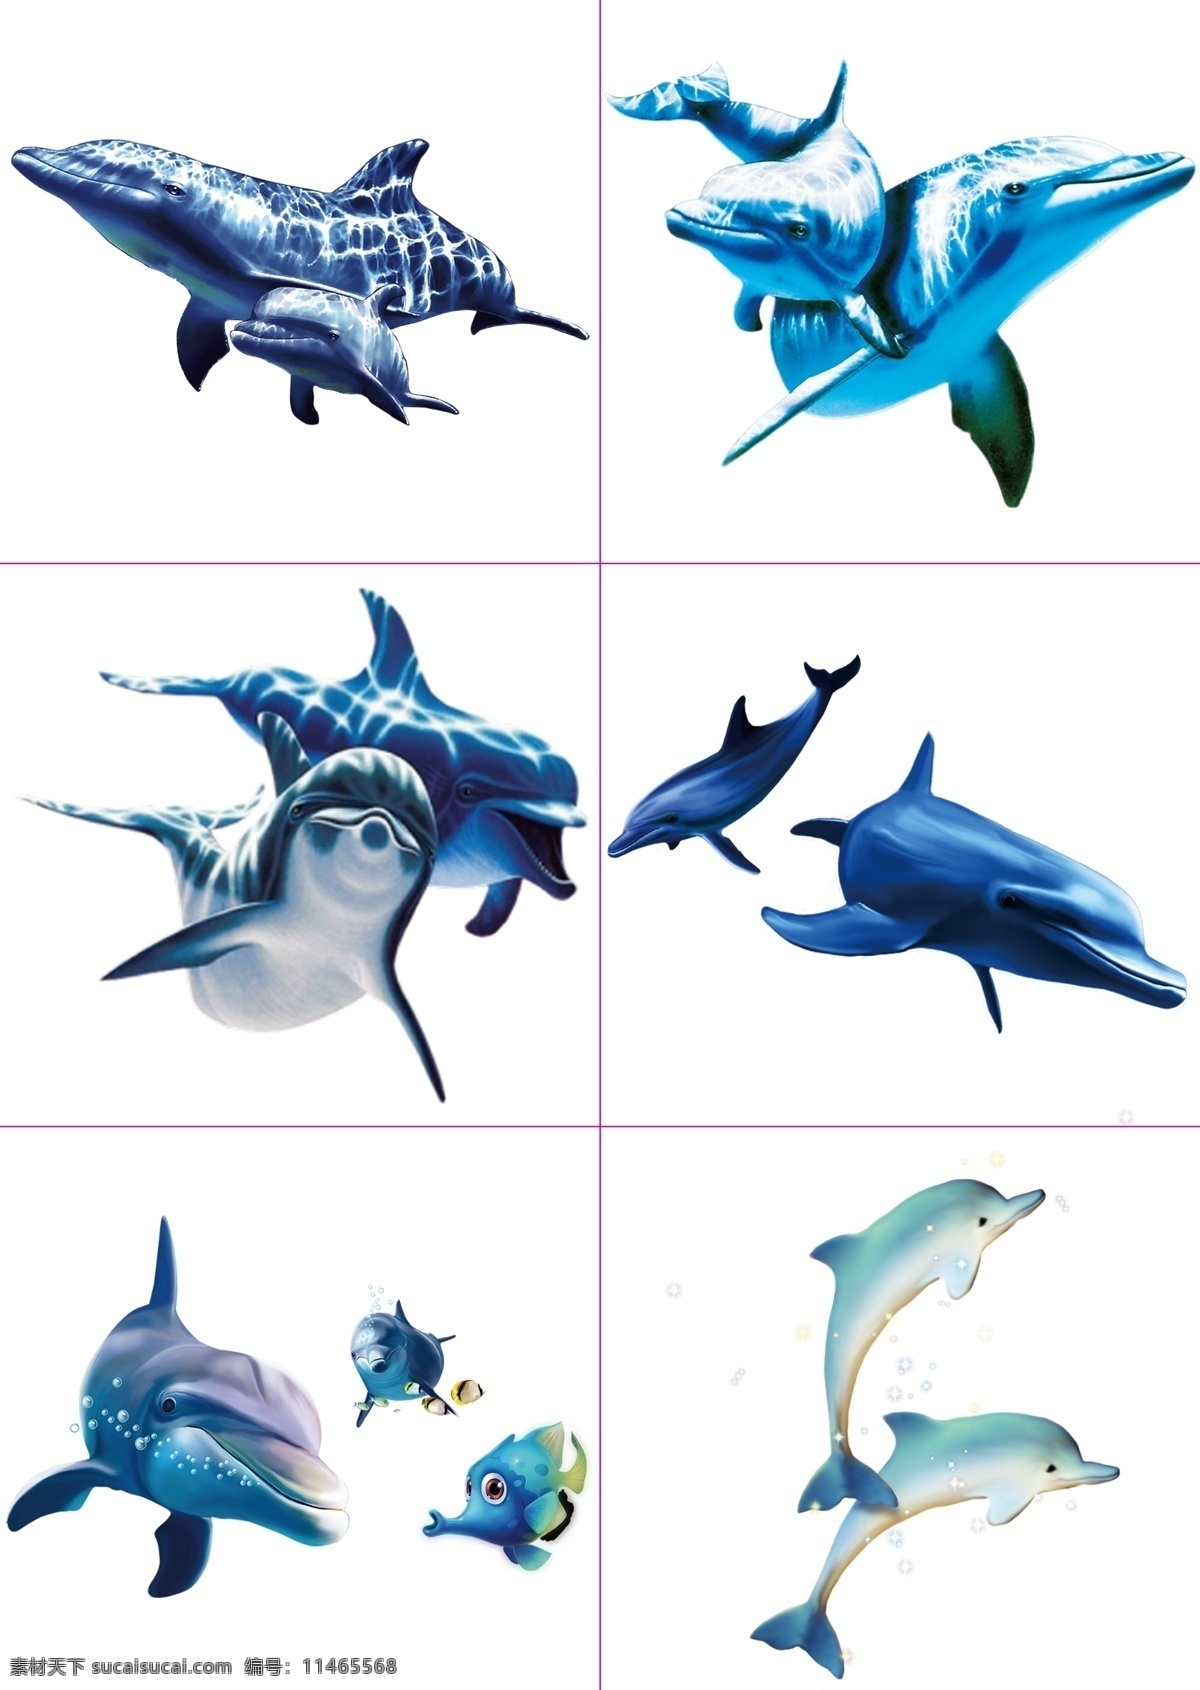 蓝色 海豚 蓝色海豚 可爱海豚 小海豚 两张小海豚 精美海豚 设计素材 平面设计素材 动物素材 分层